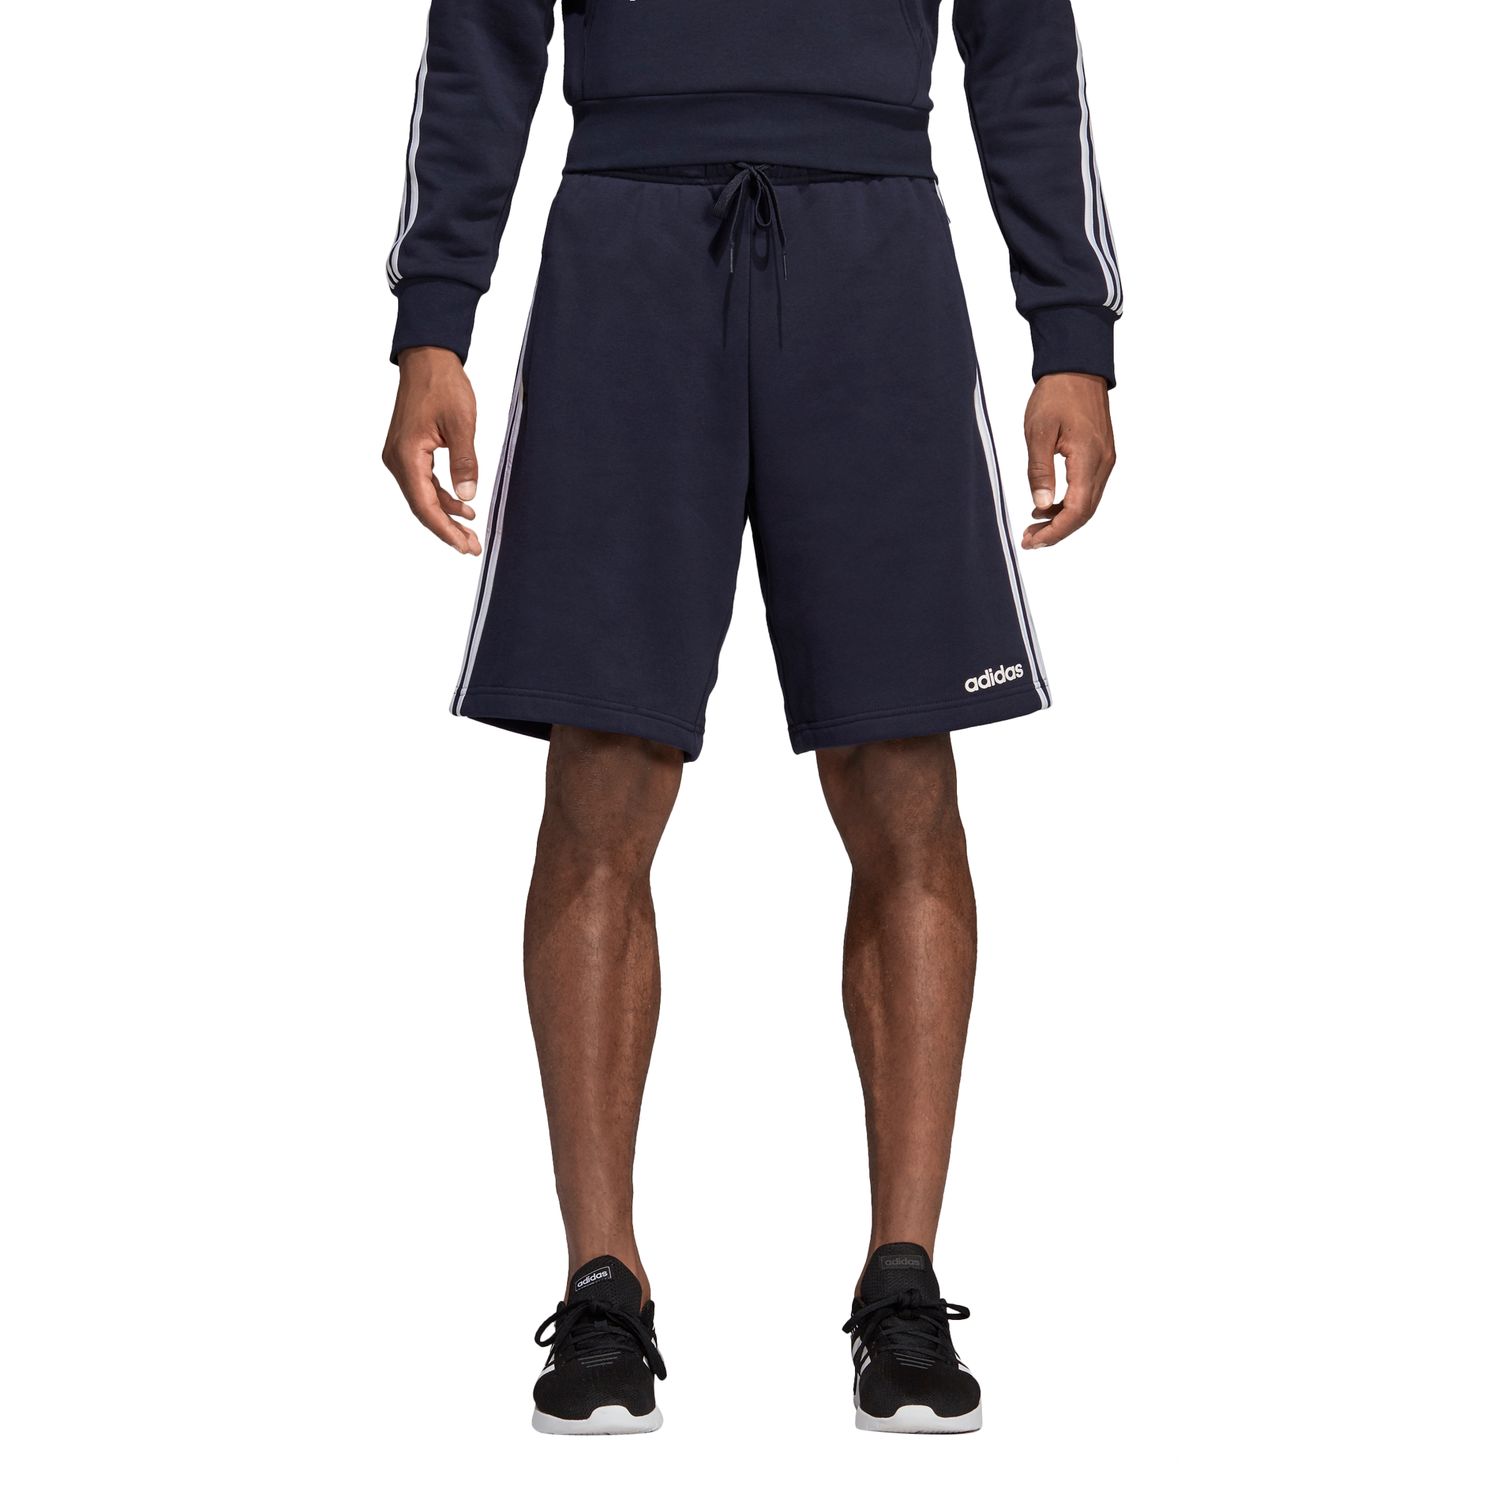 men's adidas fleece shorts